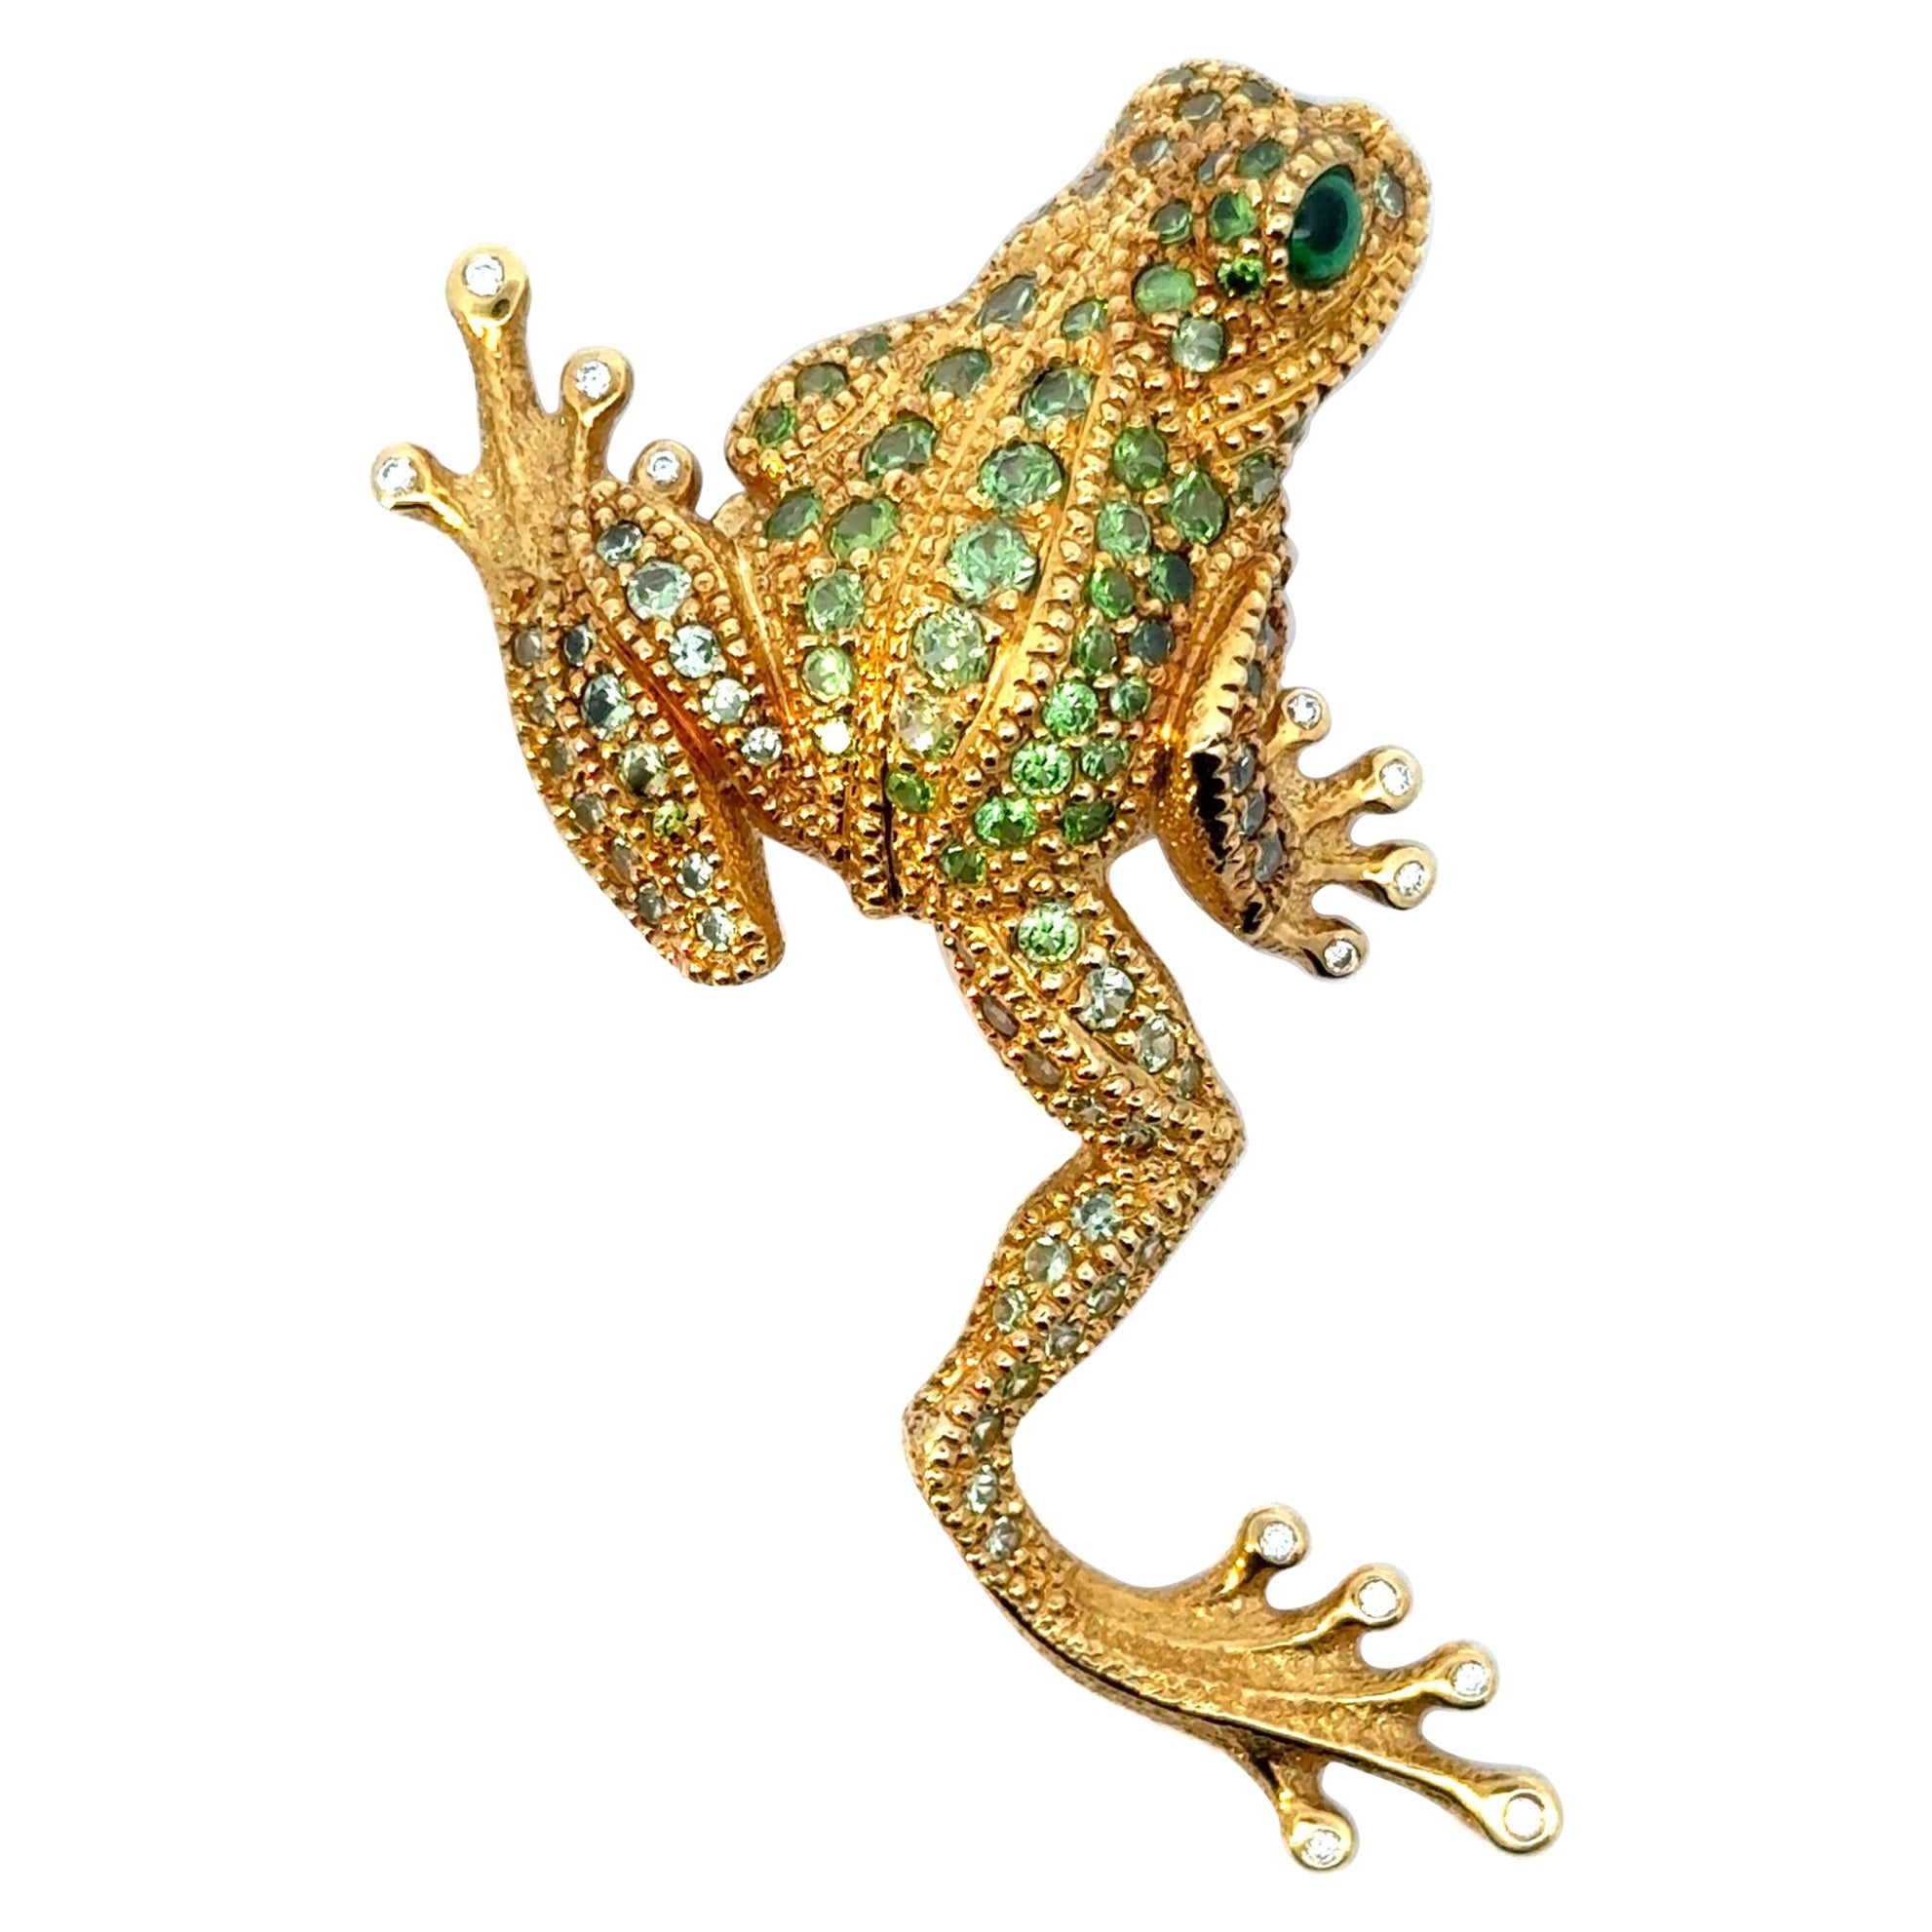 Demantoid Garnet "Frog" Brooch